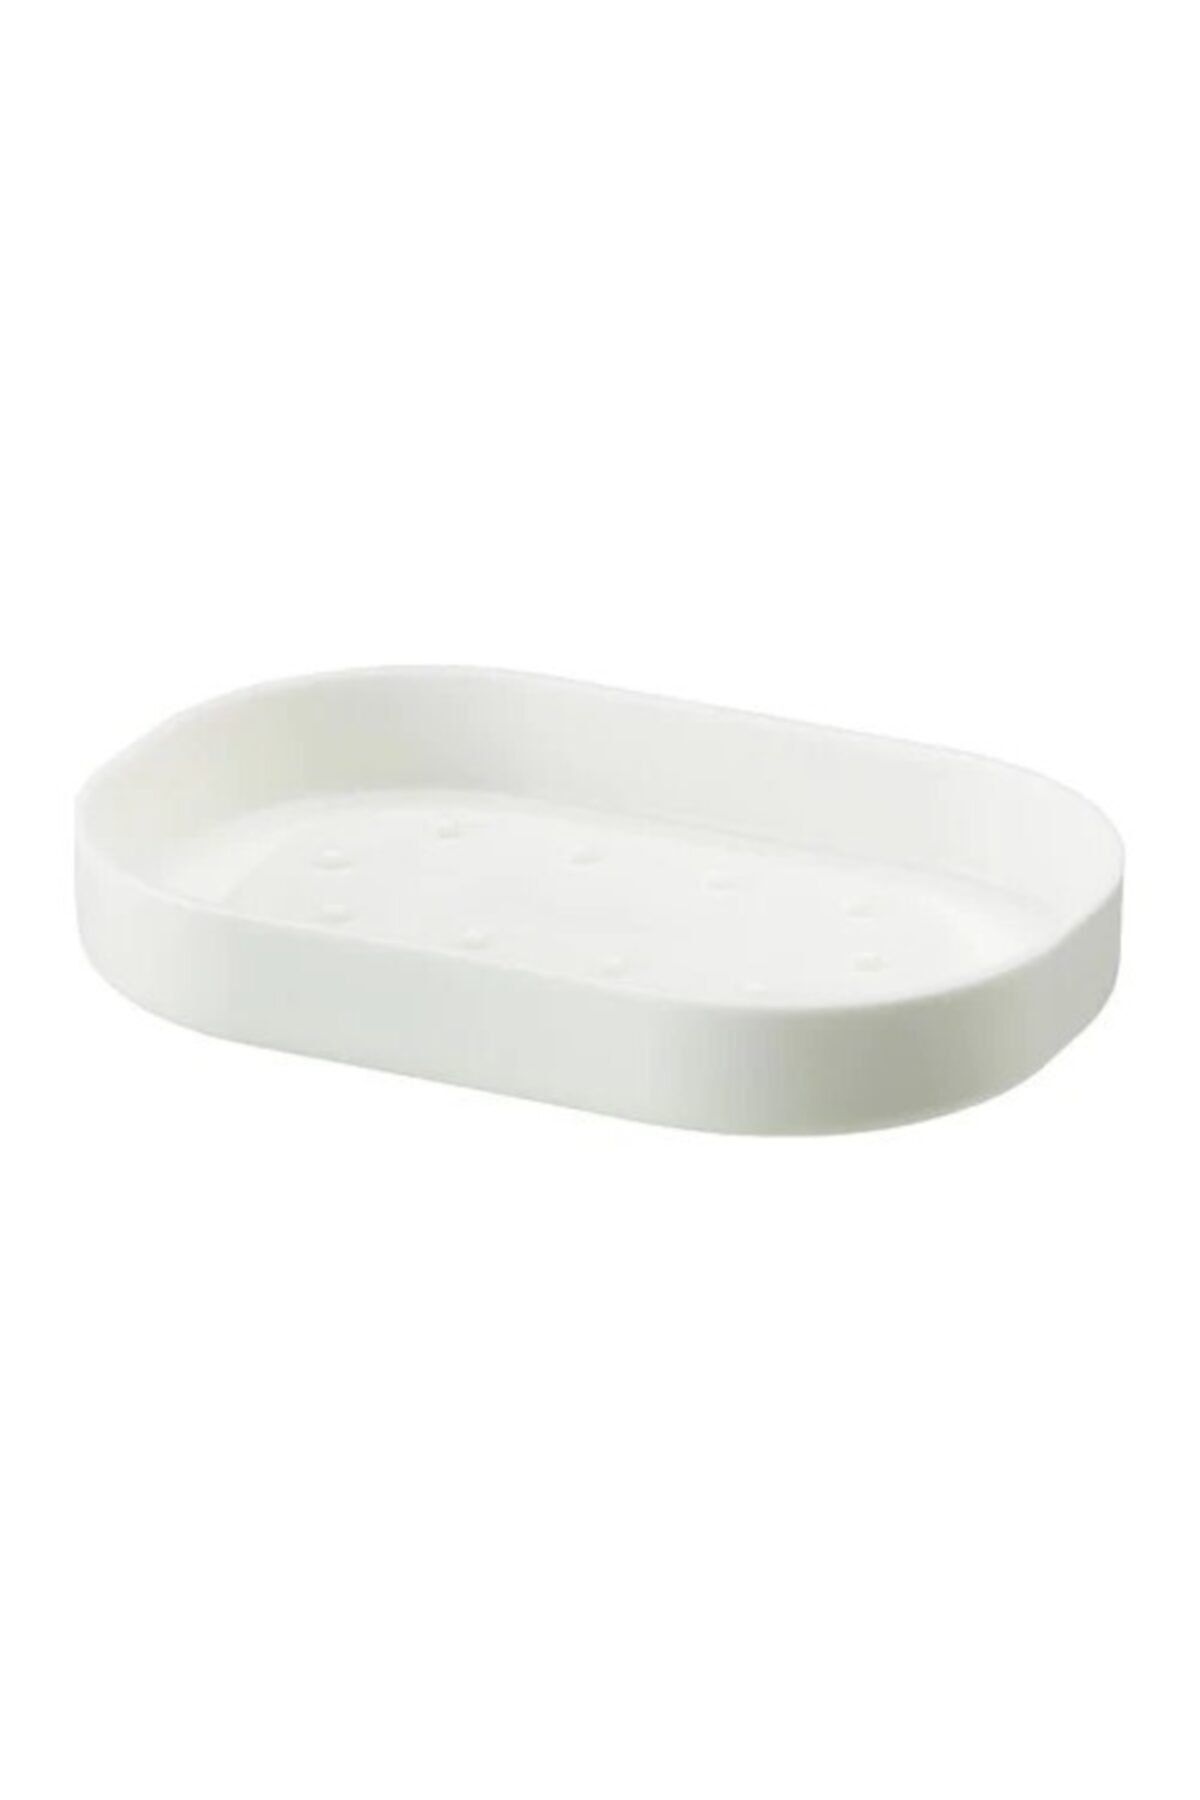 BARBUN Ikea Enudden Plastik Katı Sabunluk - Beyaz